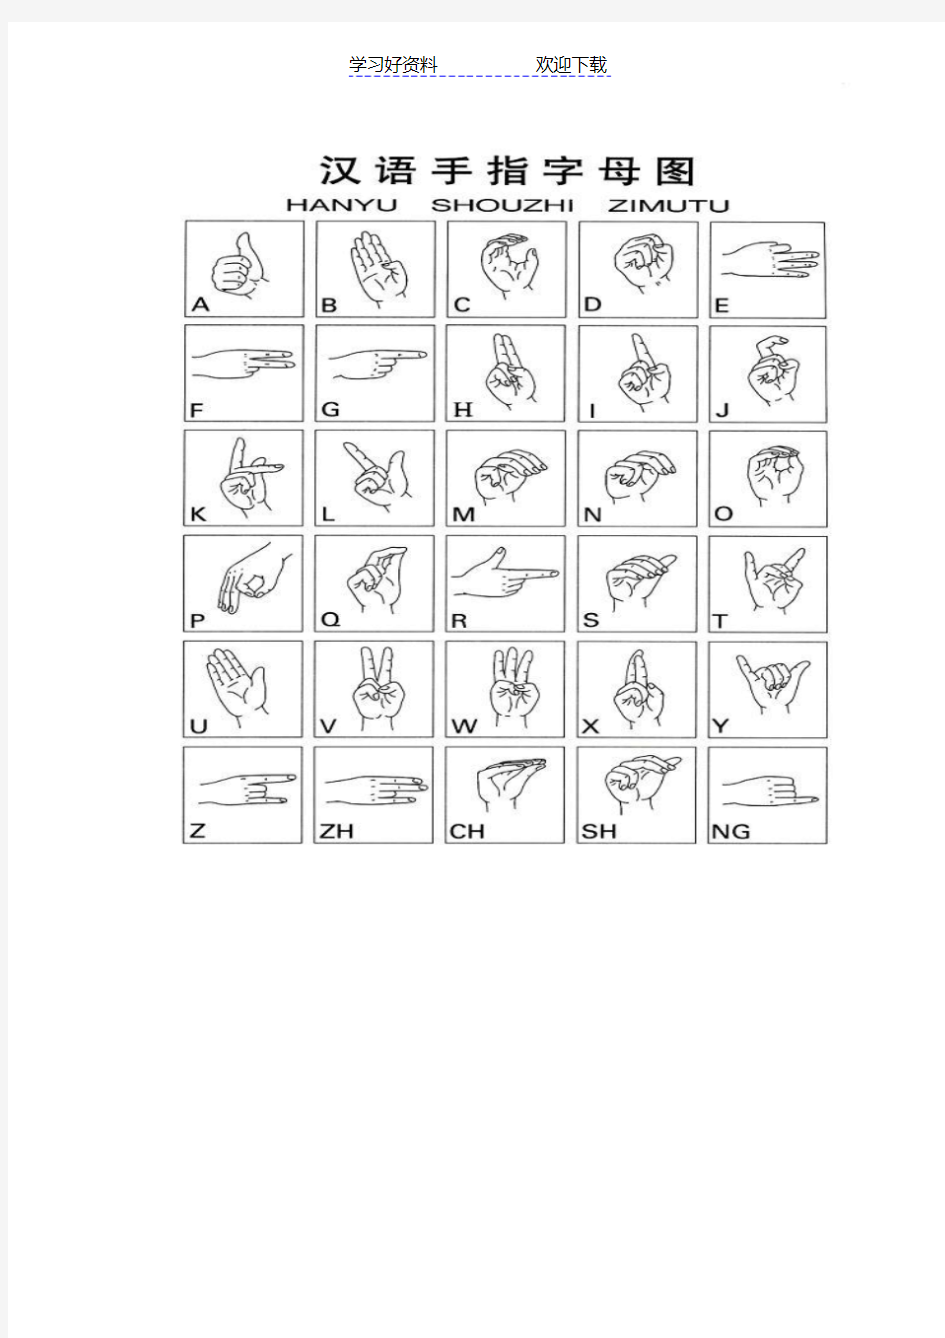 [手语拼音字母]汉语手指字母方案